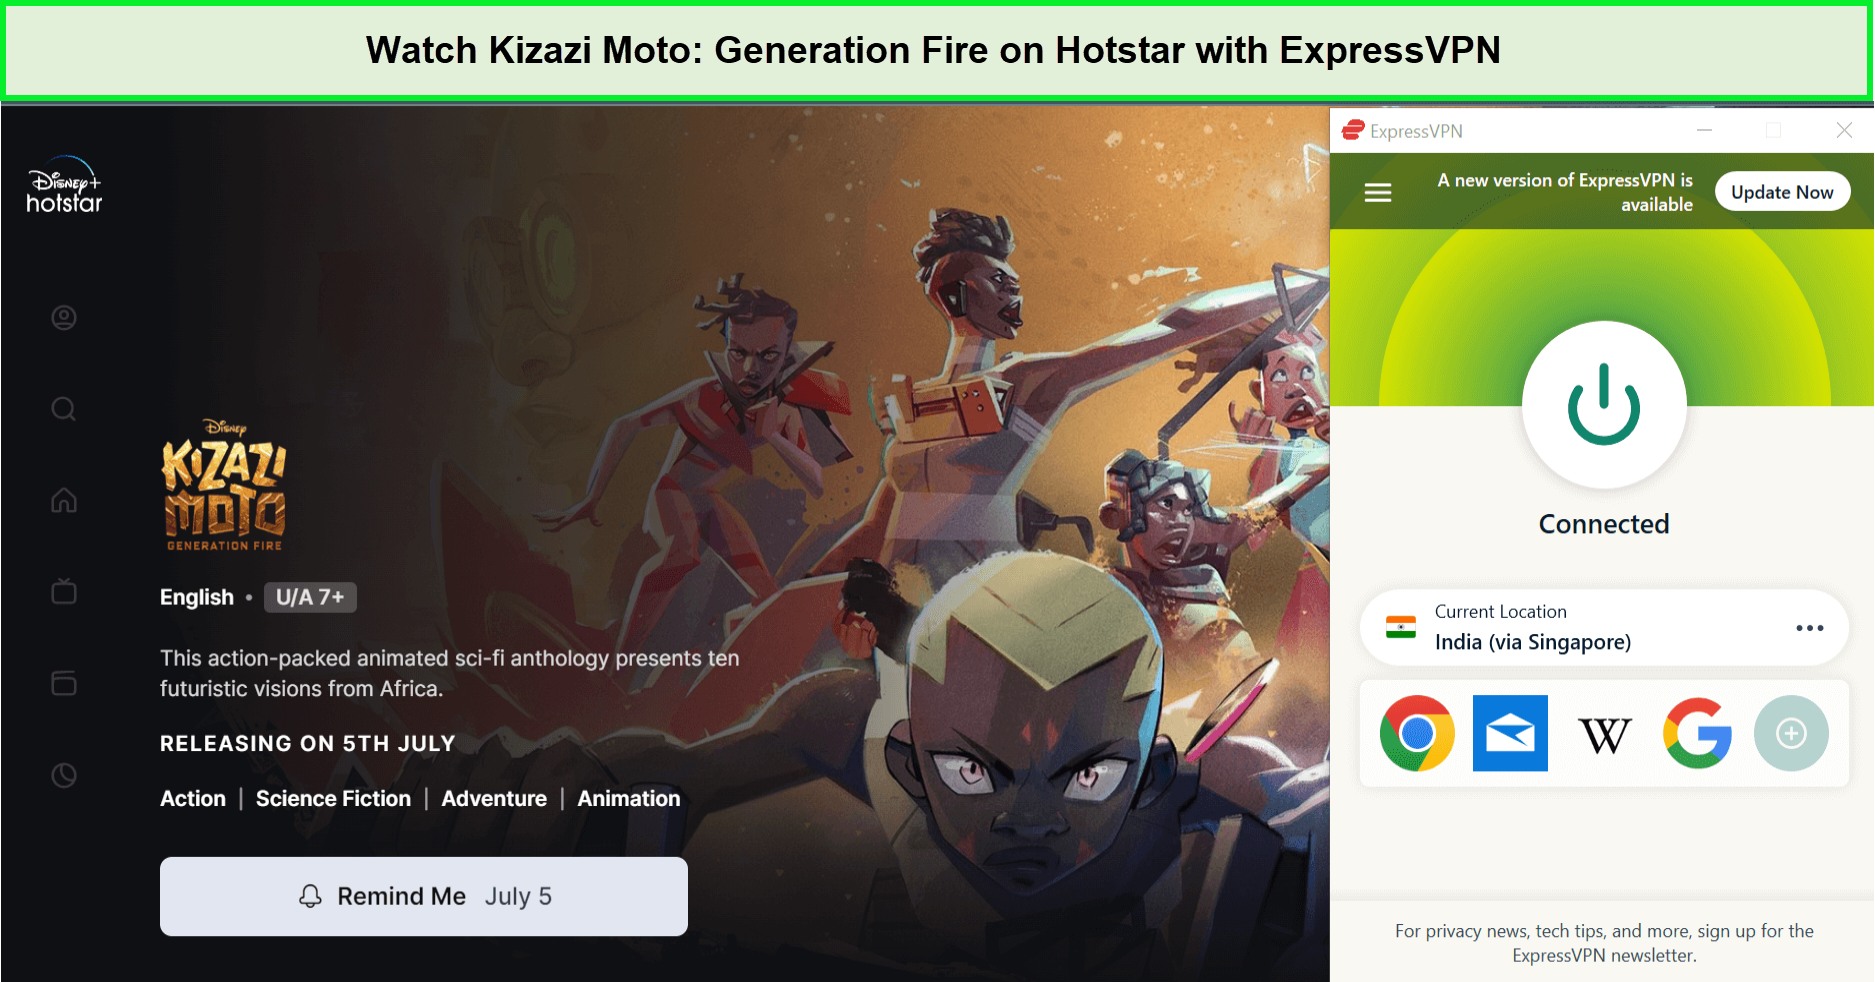 Watch-Kizazi-Moto-Generation-Fire-in-UAE-on-Hotstar-with-ExpressVPN